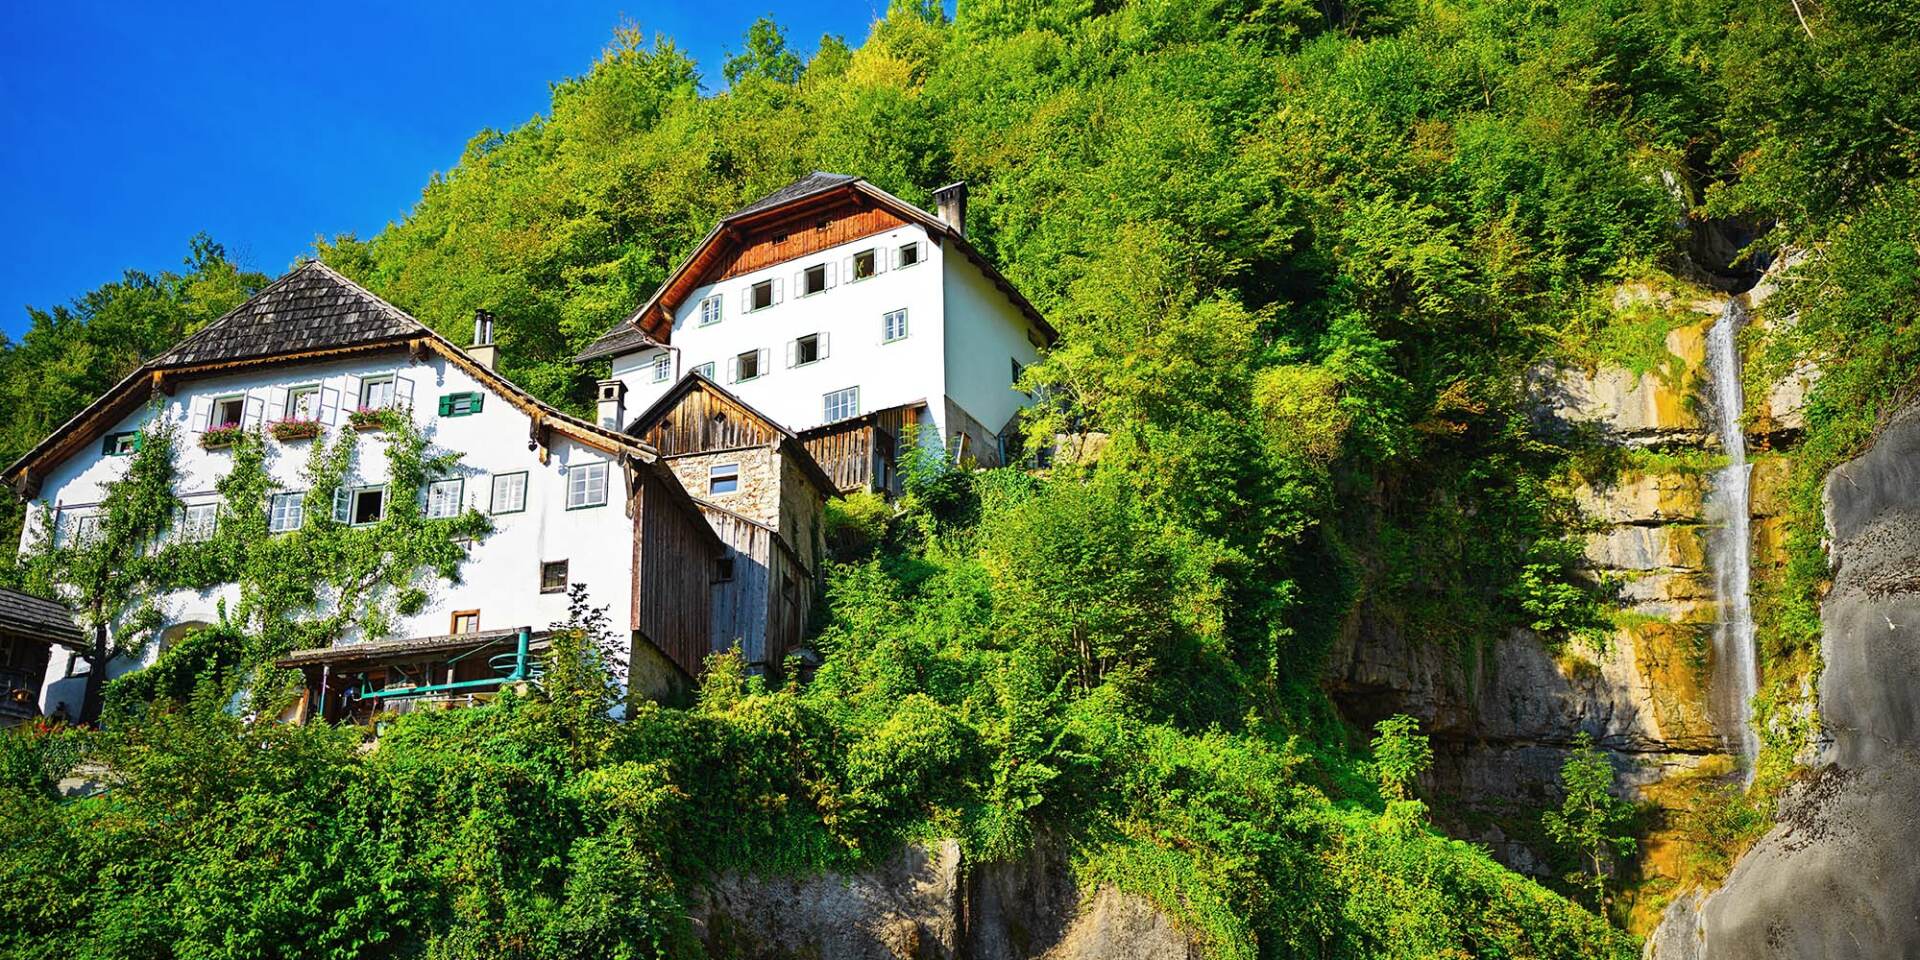 Hallstatt - old houses in the village on the hillside - Hallstatt Tour by Salzburg Panorama Tours